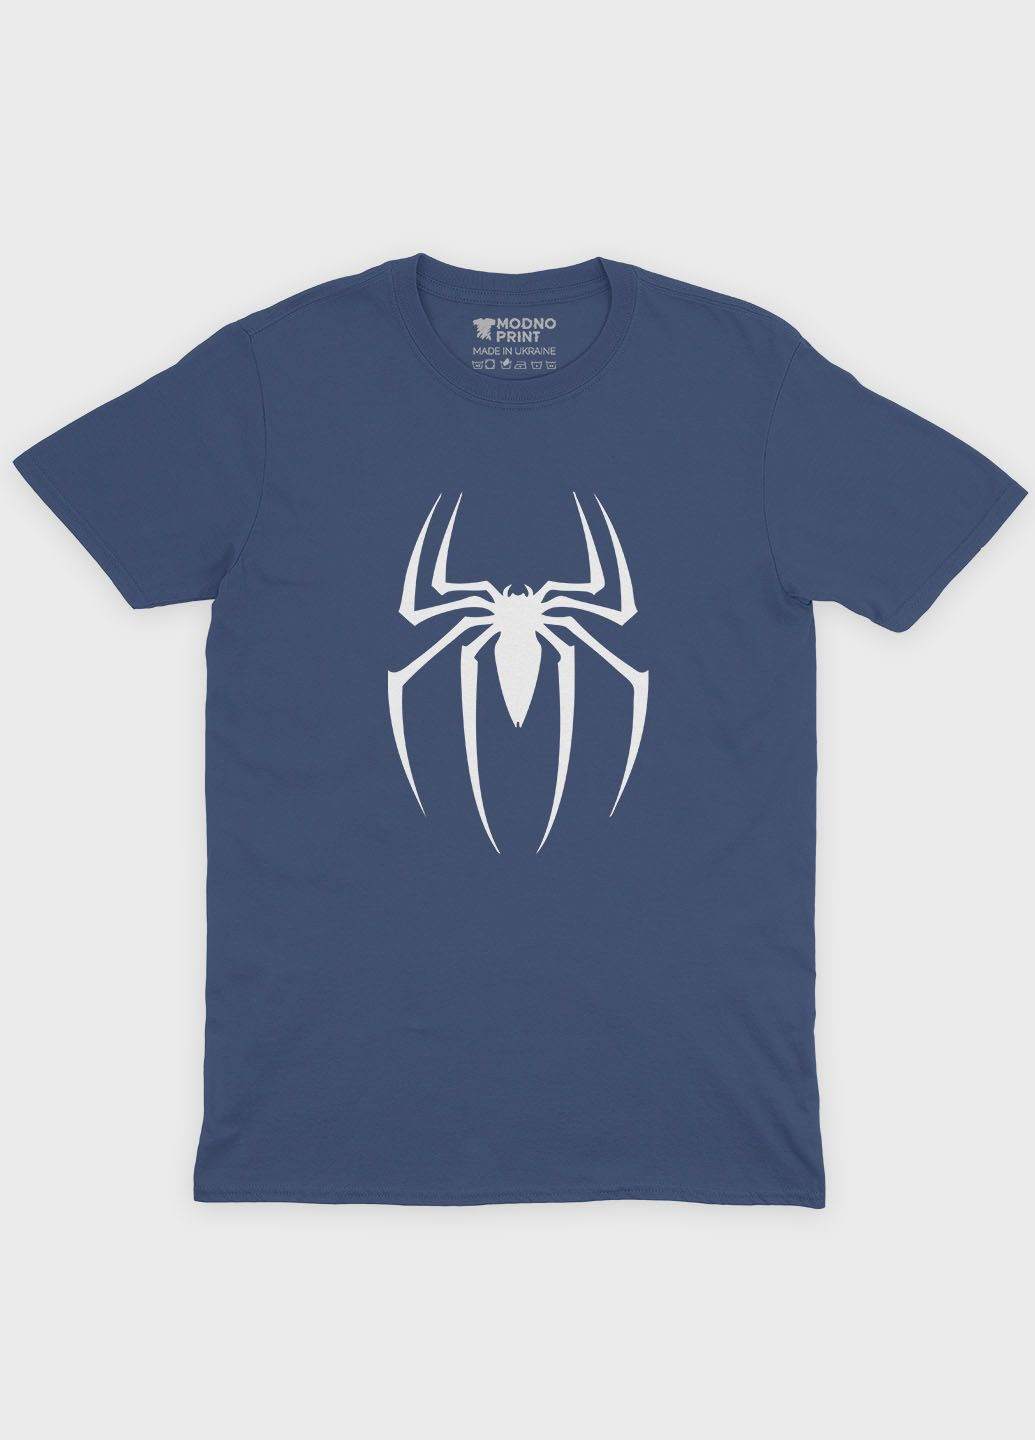 Темно-синяя демисезонная футболка для девочки с принтом супергероя - человек-паук (ts001-1-nav-006-014-106-g) Modno